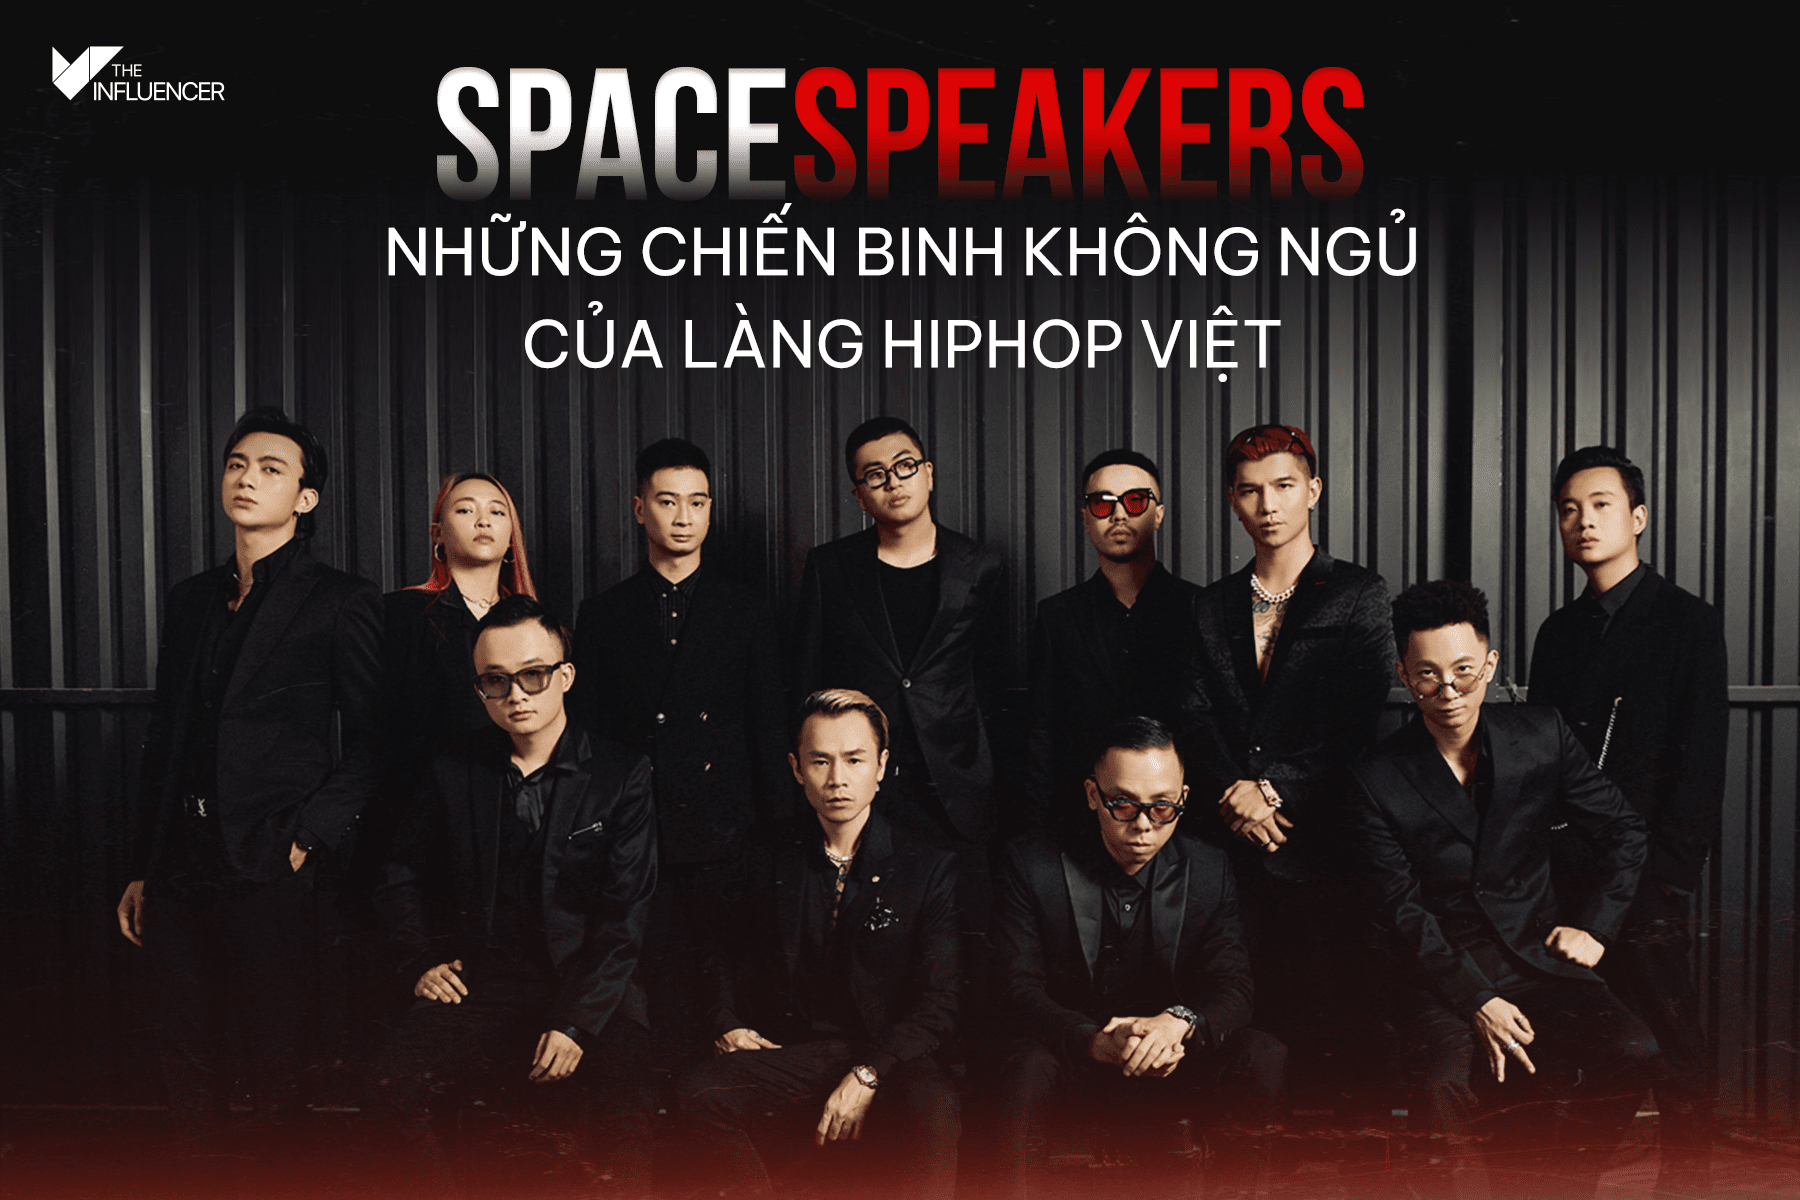 SpaceSpeakers - Những chiến binh không ngủ của làng Hiphop Việt